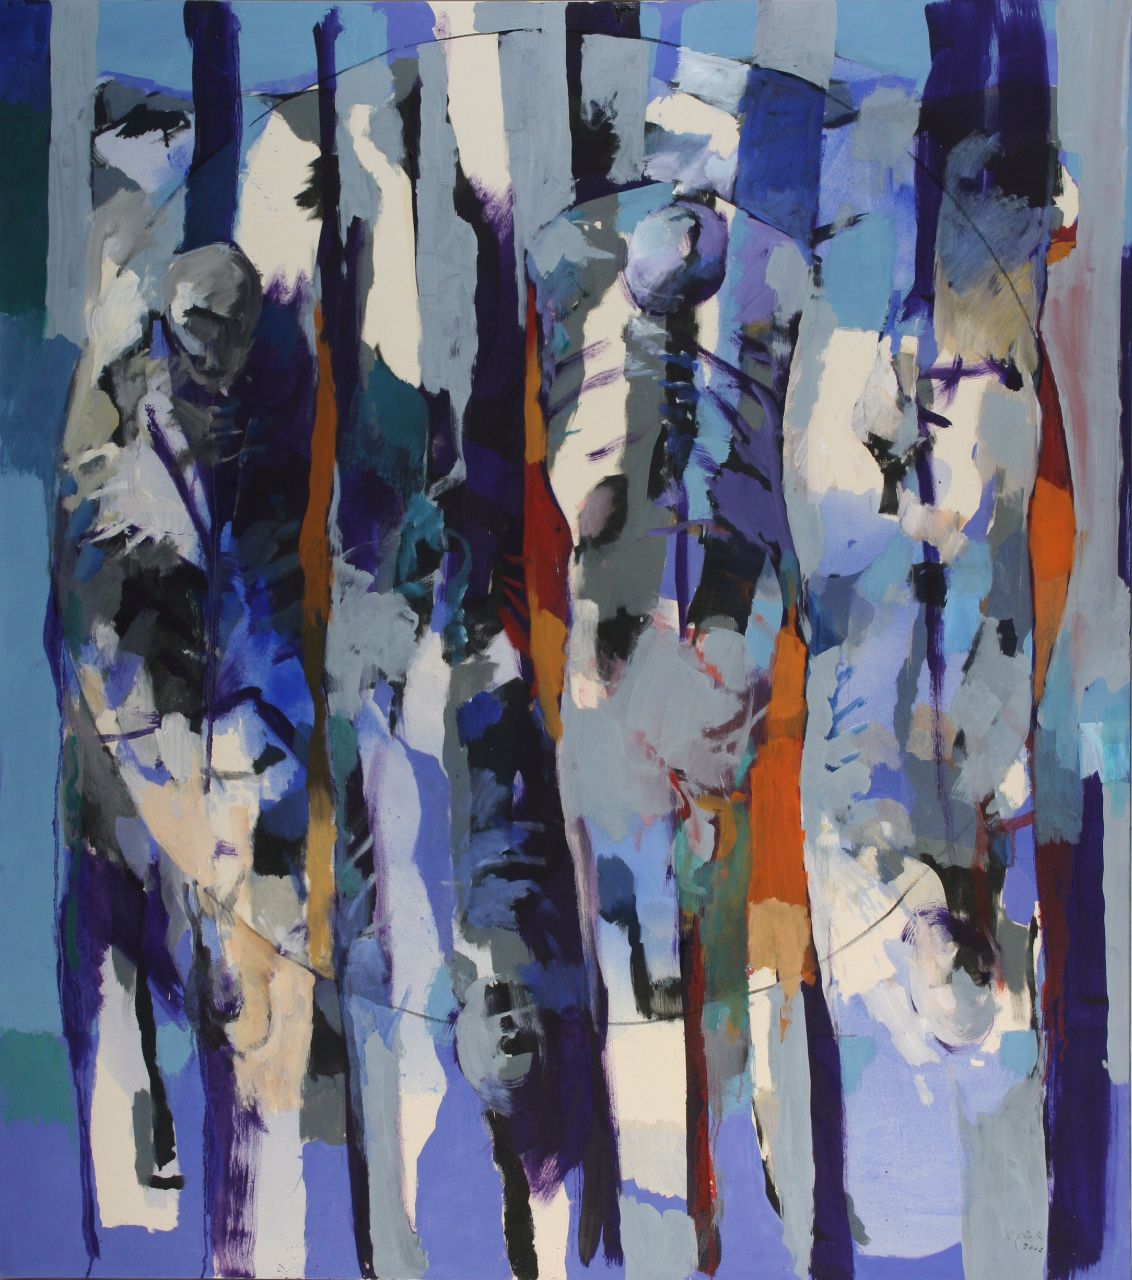 Roland Dörfler, Figuren im Blau, 2002, Öl auf Nessel, 170 cm x 150 cm, dör053kü